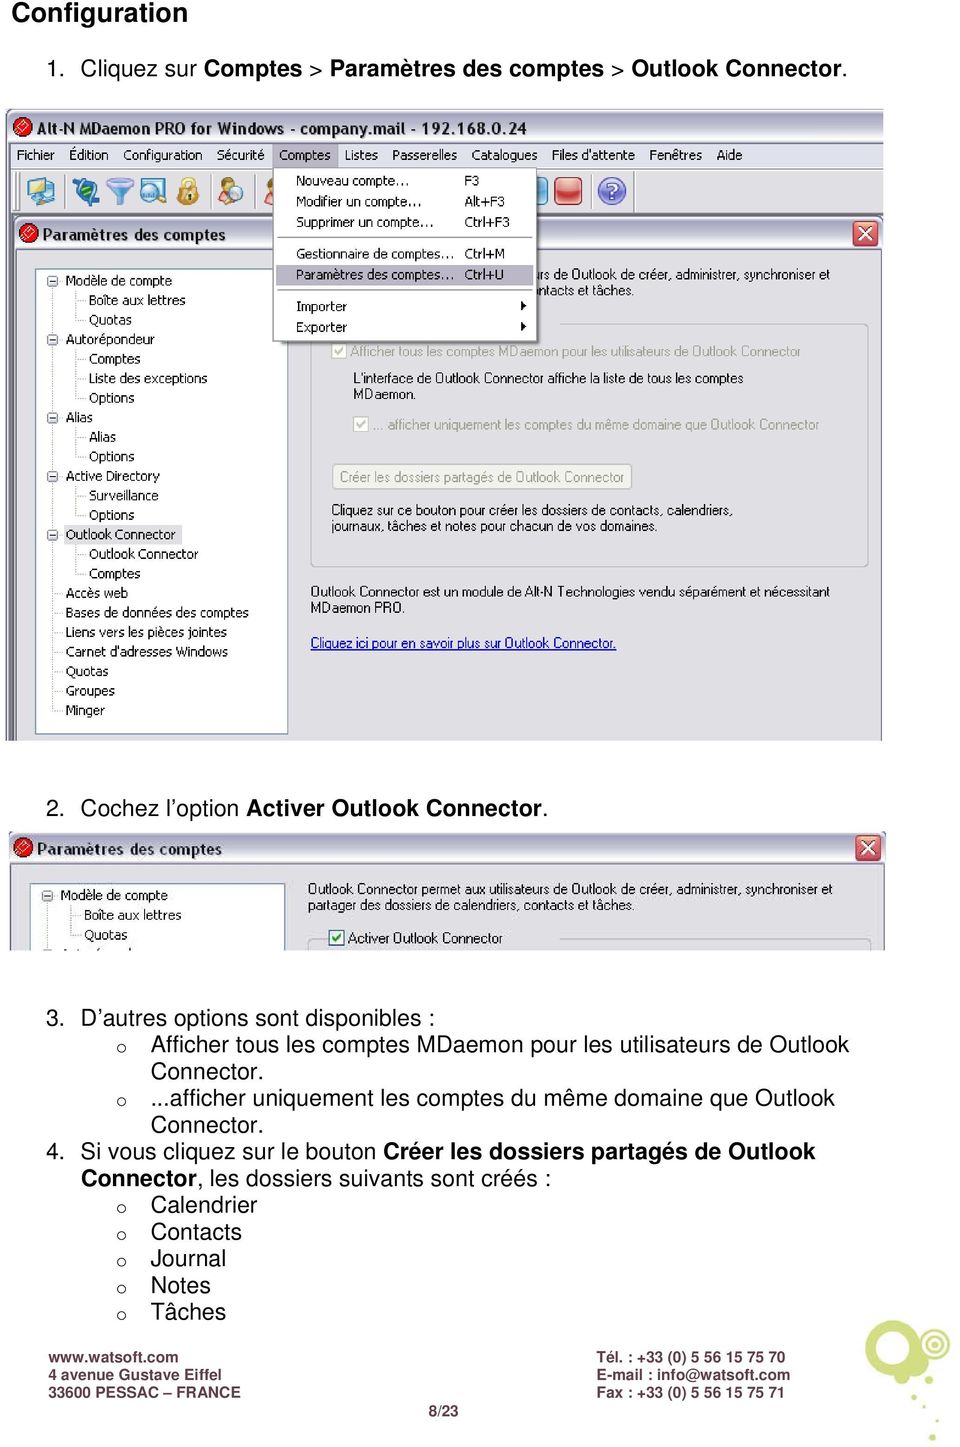 D autres options sont disponibles : o Afficher tous les comptes MDaemon pour les utilisateurs de Outlook Connector. o...afficher uniquement les comptes du même domaine que Outlook Connector.